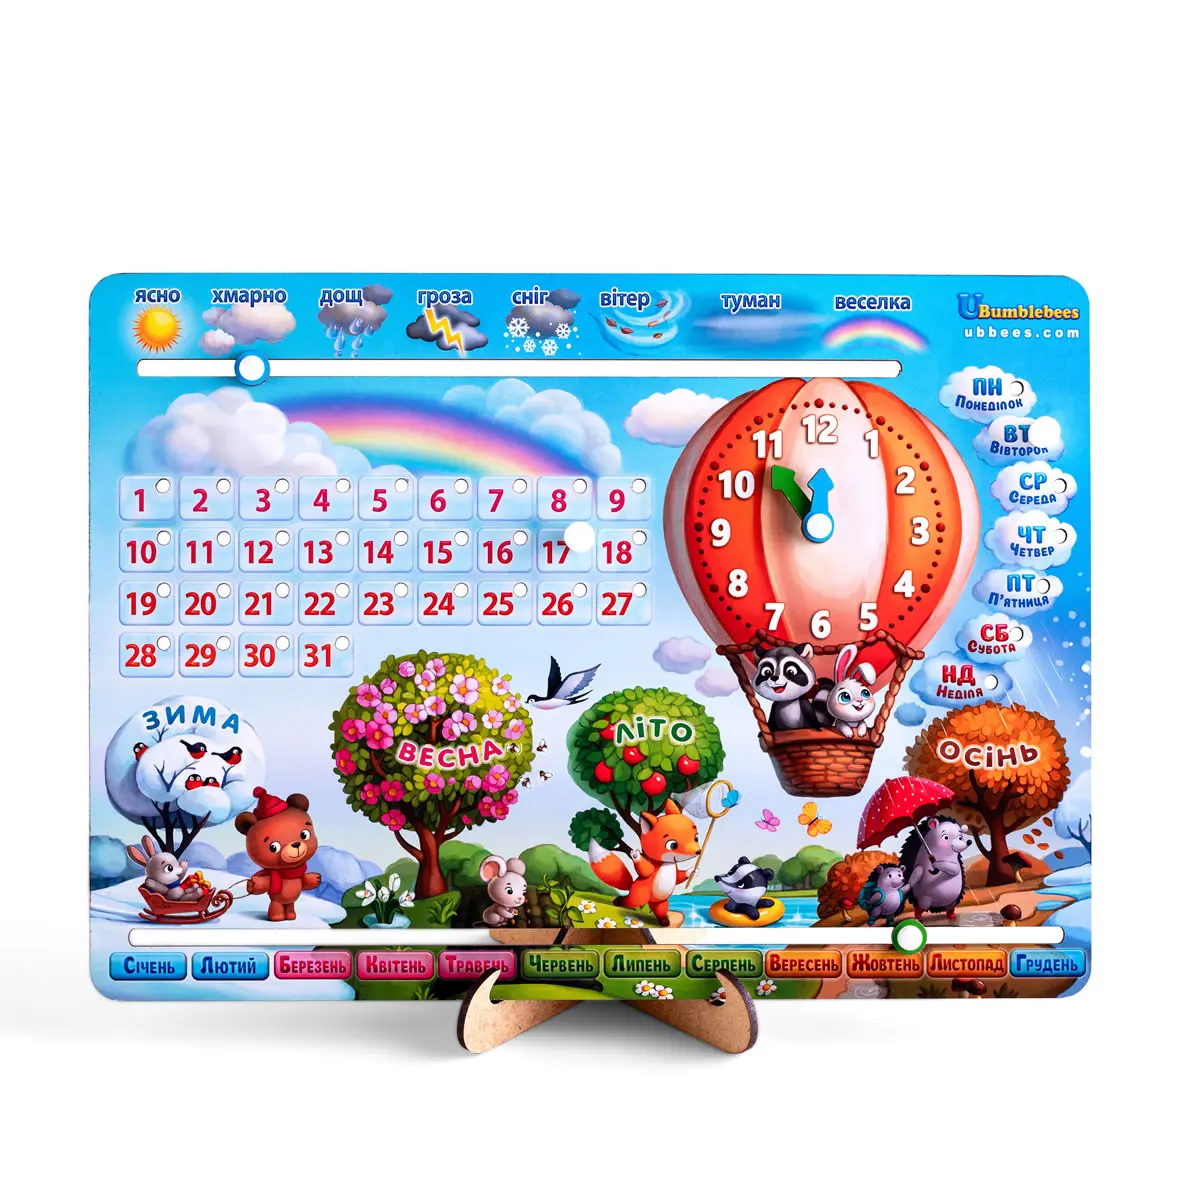 Детская деревянная развивающая игра  Игра "Календарь Воздушный шар" на украинском языке